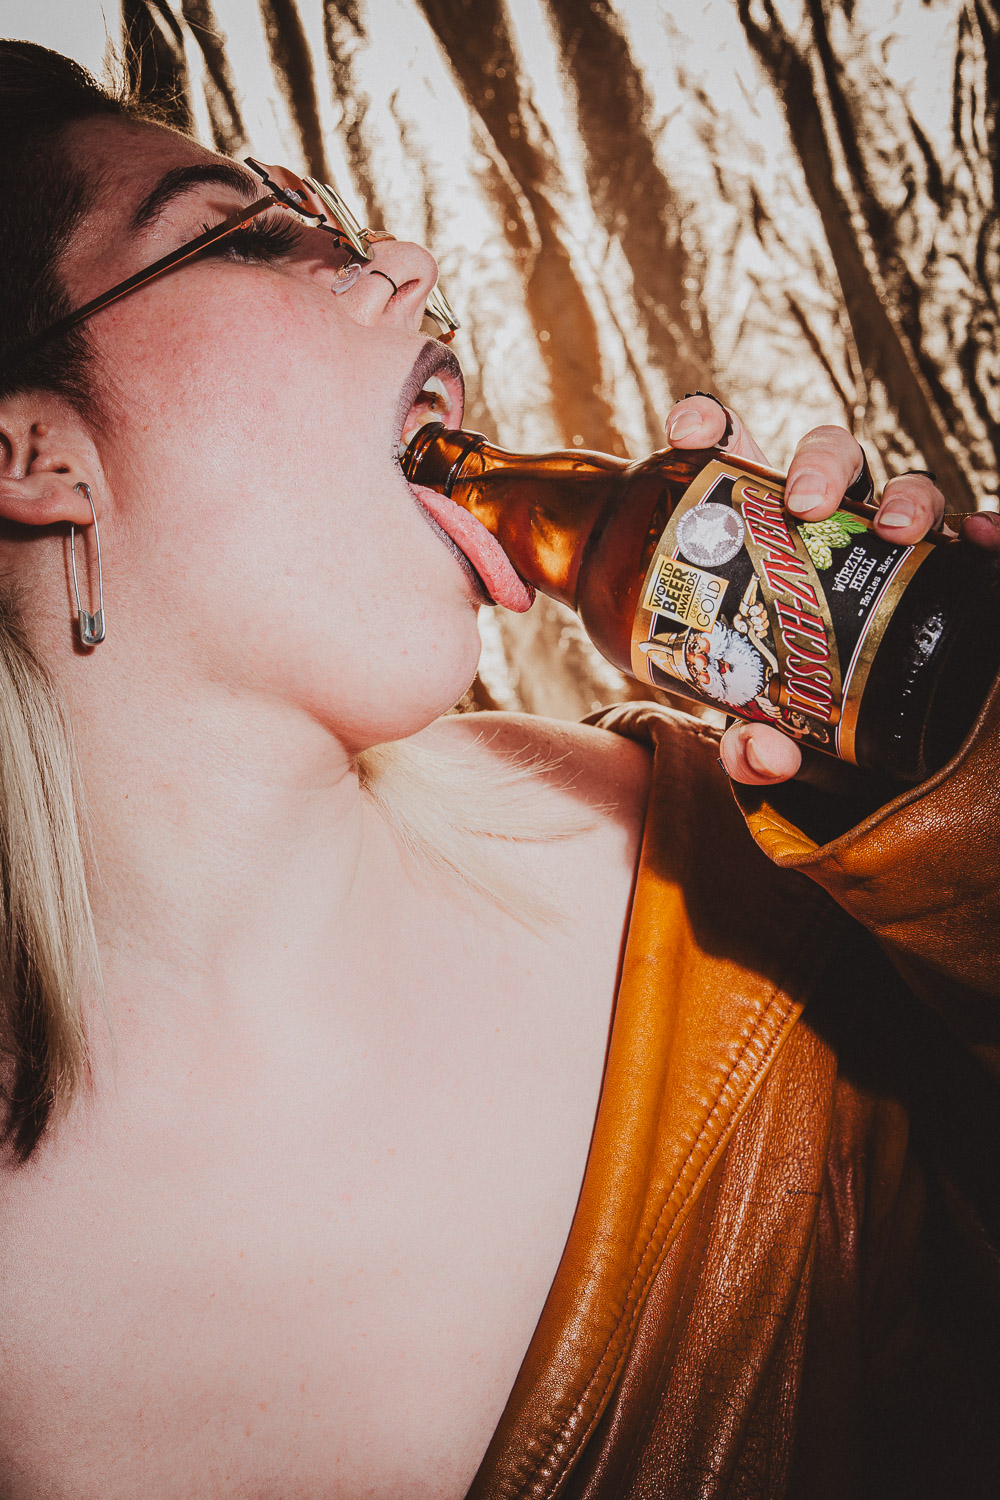 Eine Frau rtinkt lasziv aus einem Bier.